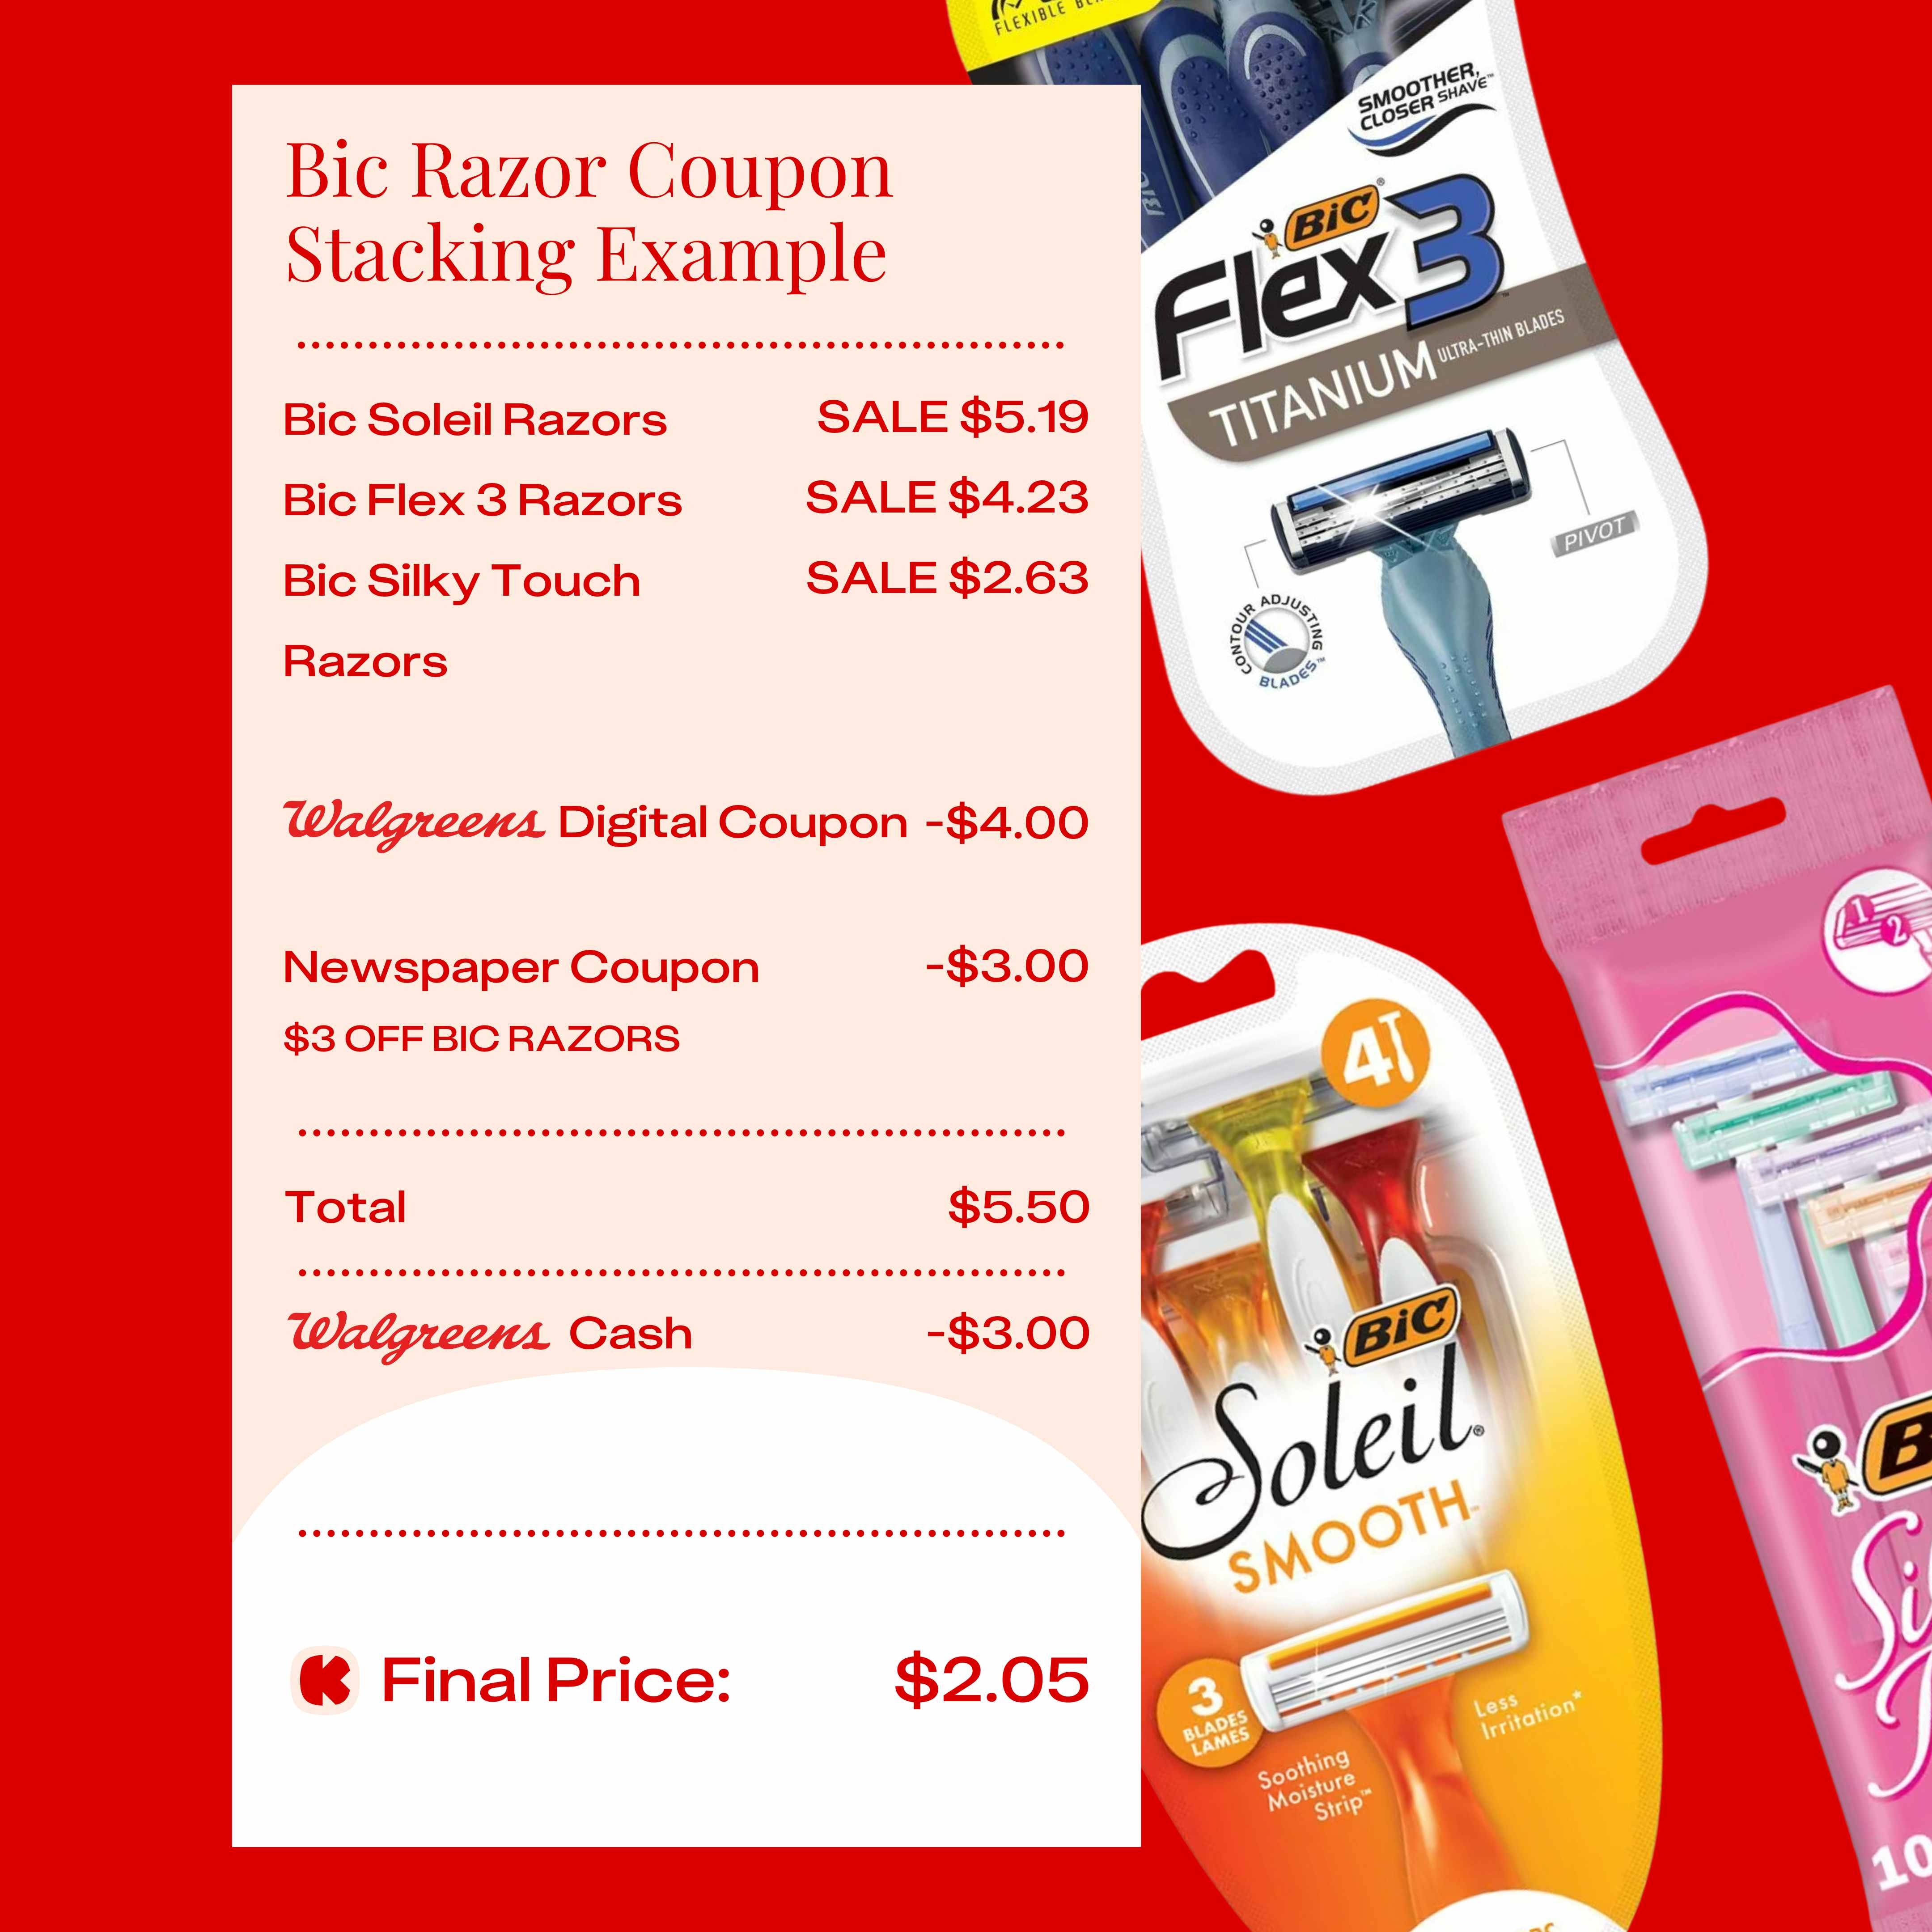 a coupon stacking example bic razors at walgreens